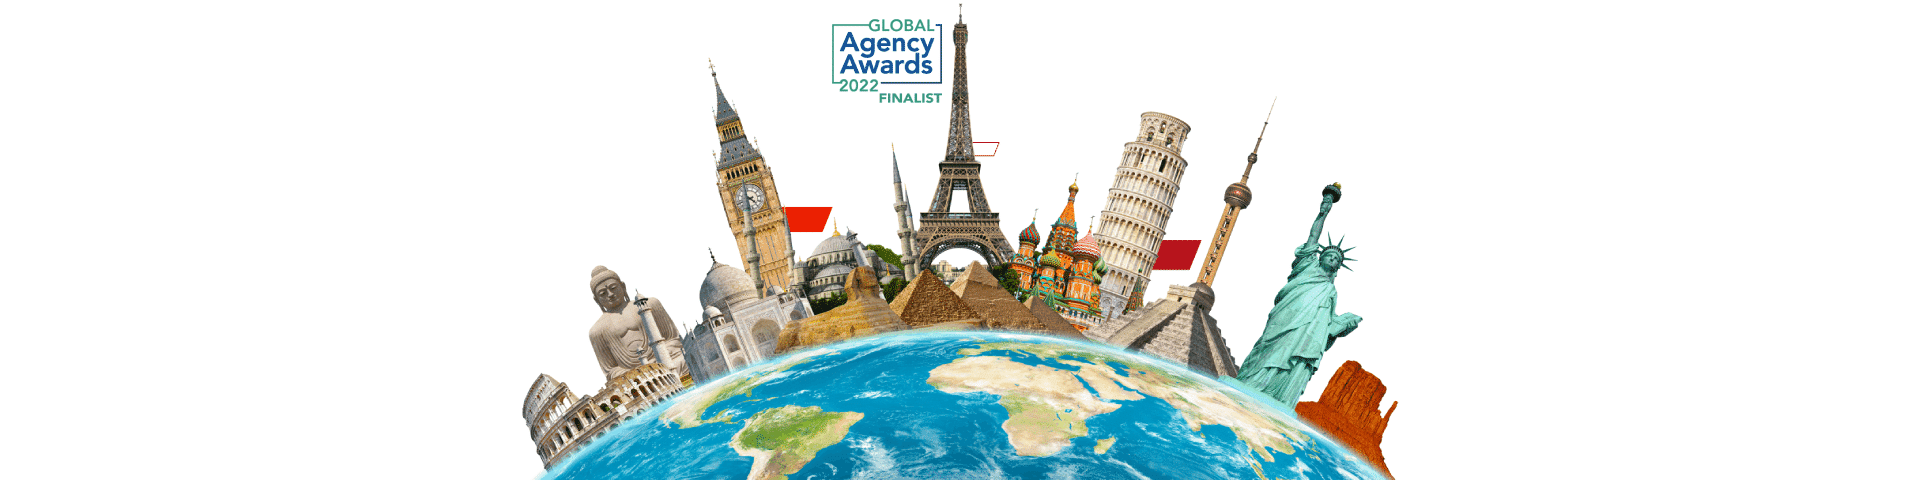 Global Agency Awards 2022 - nominacja